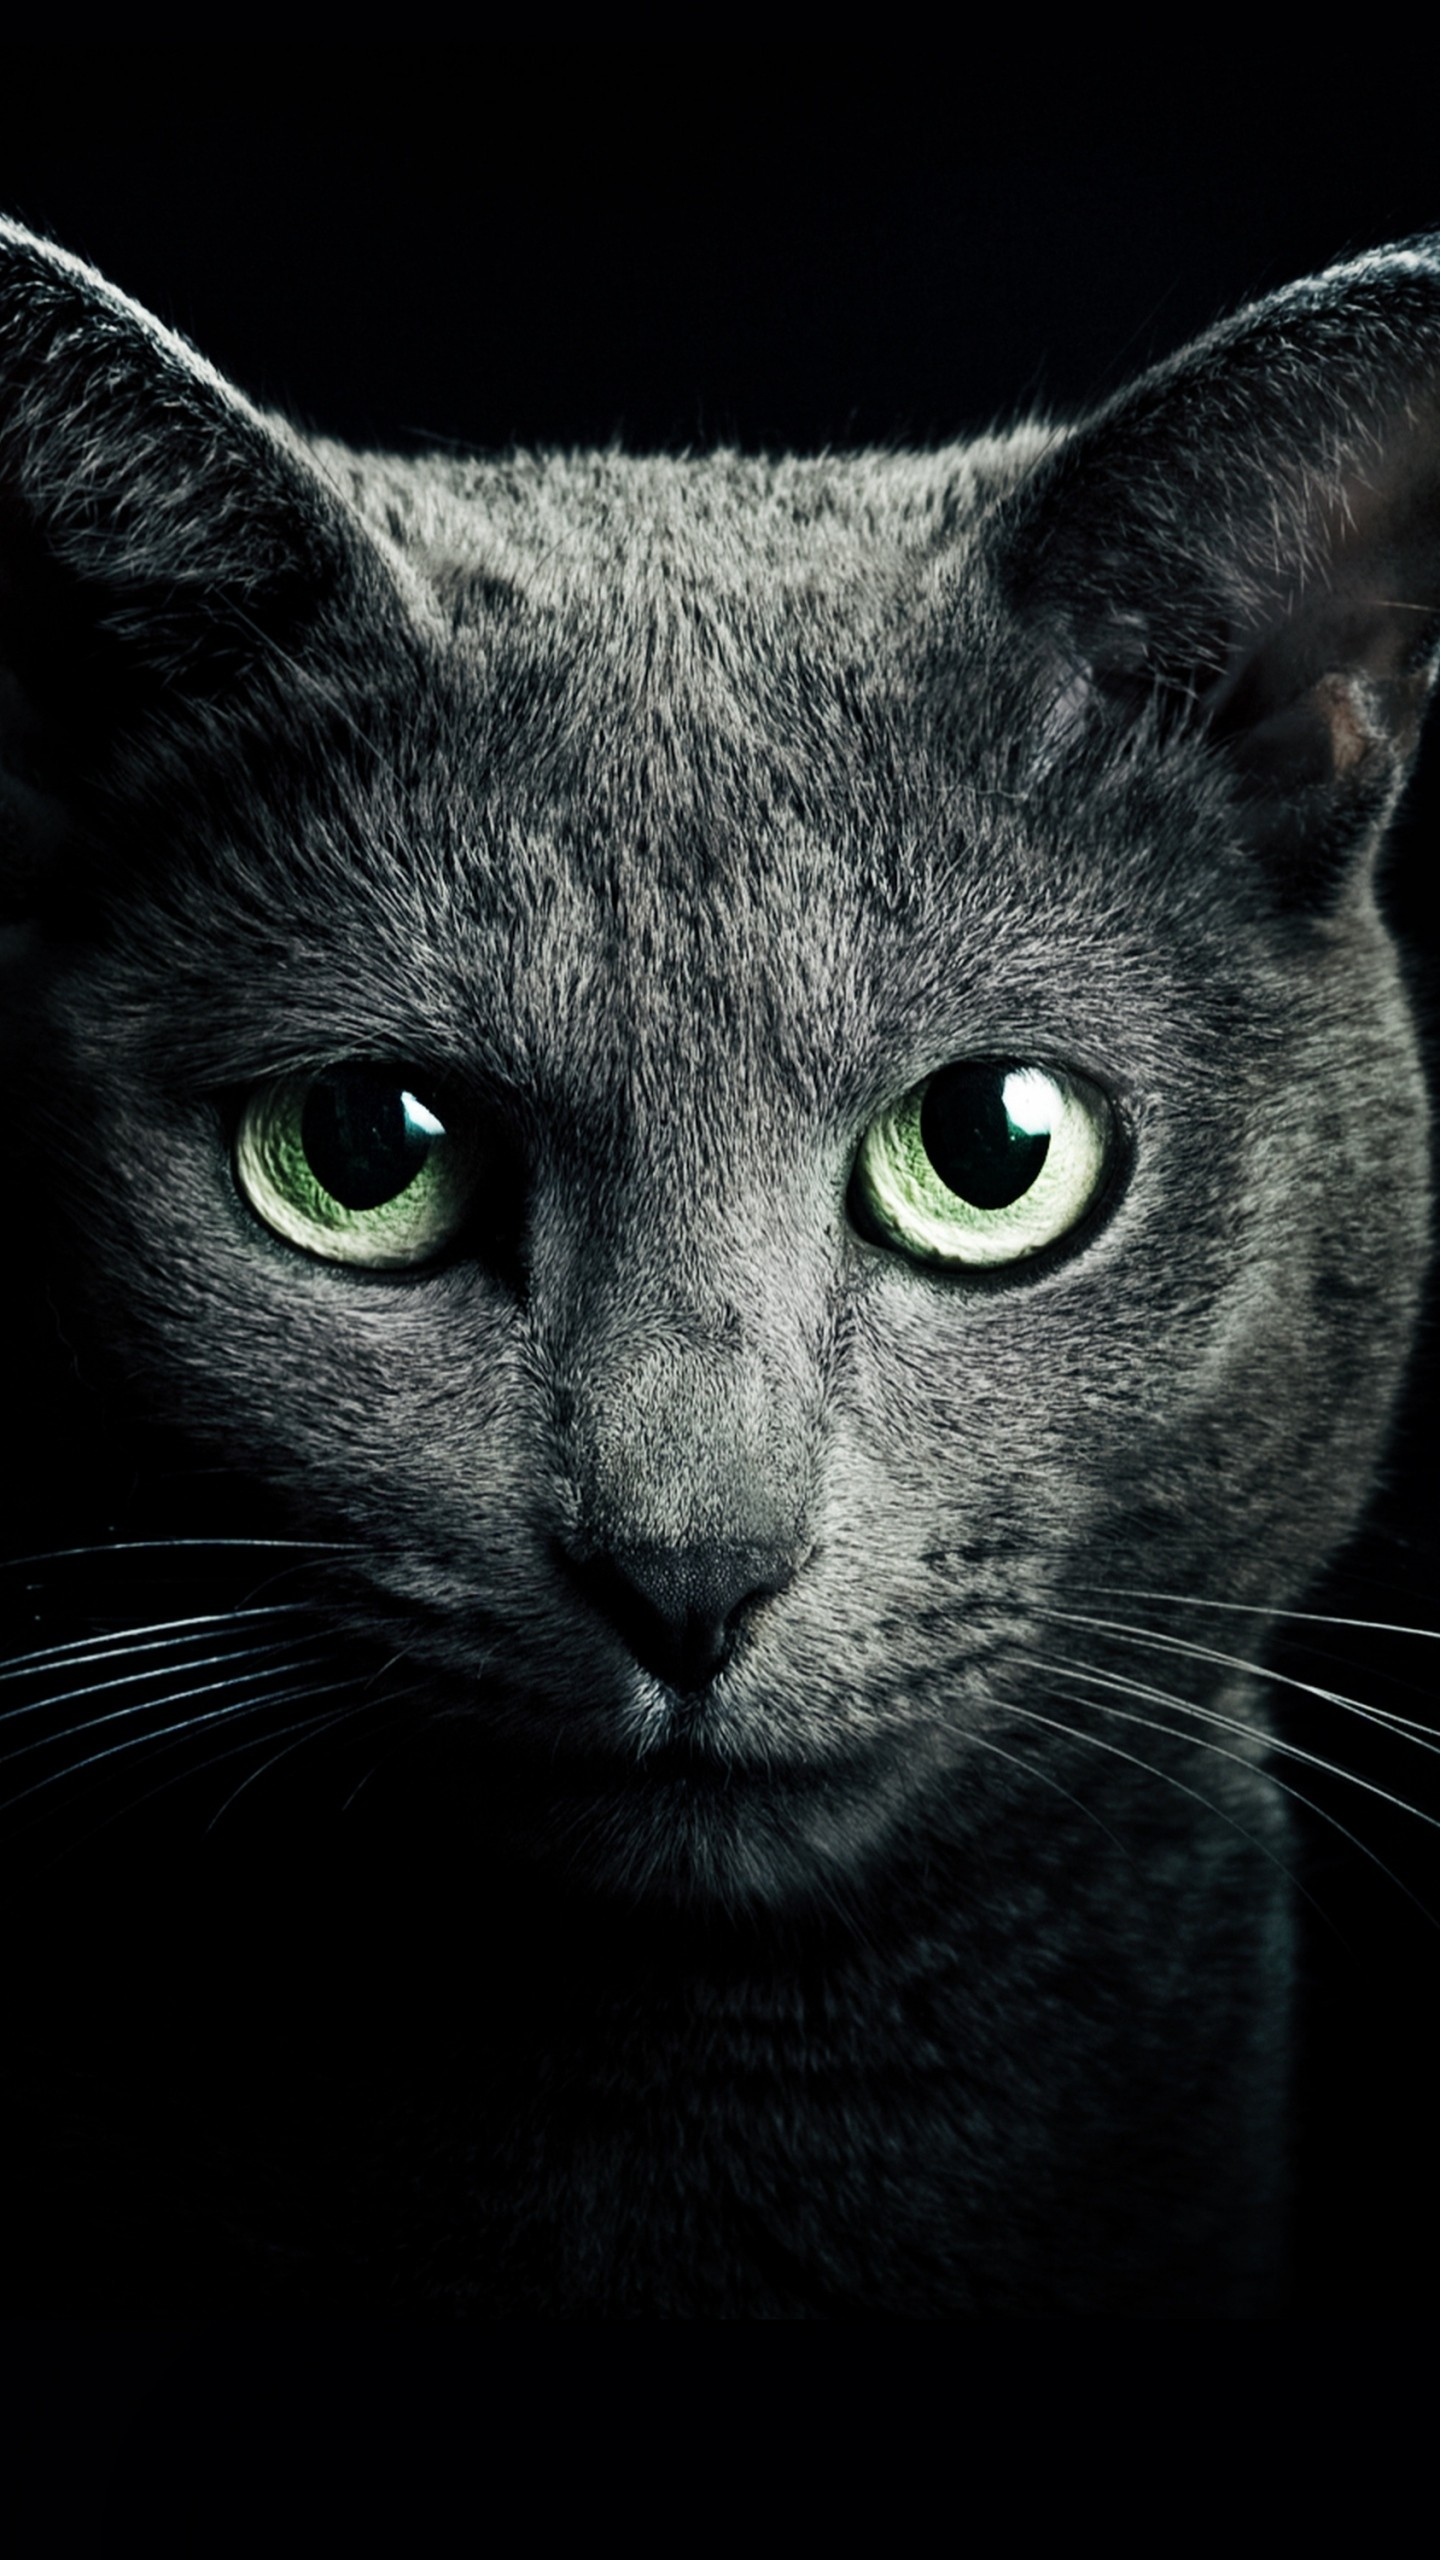 모바일 고양이 벽지,고양이,중소형 고양이,felidae,구레나룻,검은 고양이